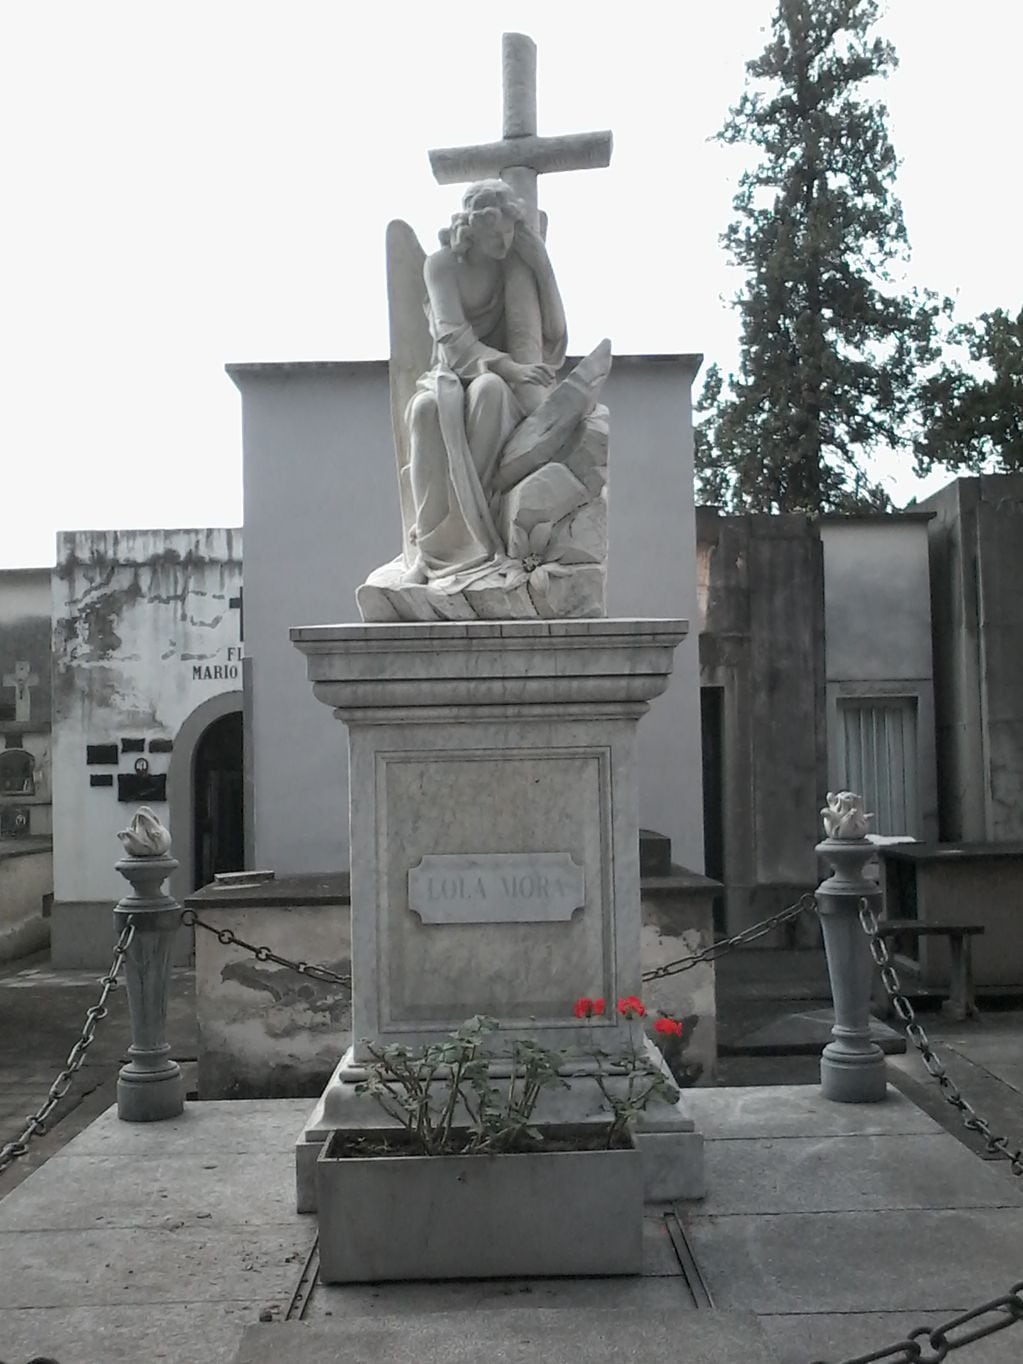 Tumba de Lola Mora en el Cementerio del Oeste, Tucumán